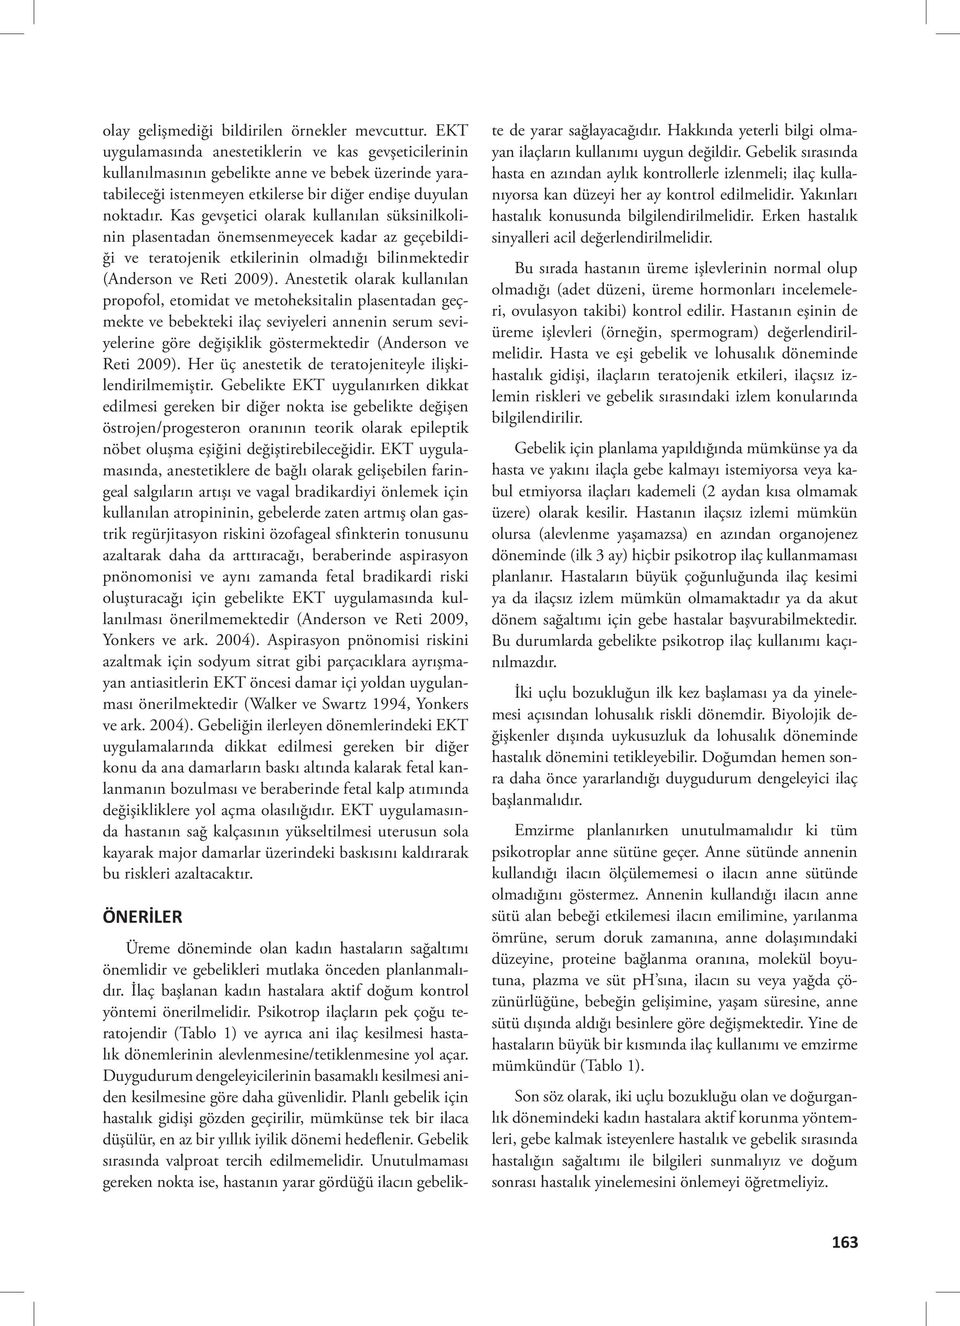 Kas gevşetici olarak kullanılan süksinilkolinin plasentadan önemsenmeyecek kadar az geçebildiği ve teratojenik etkilerinin olmadığı bilinmektedir (Anderson ve Reti 2009).